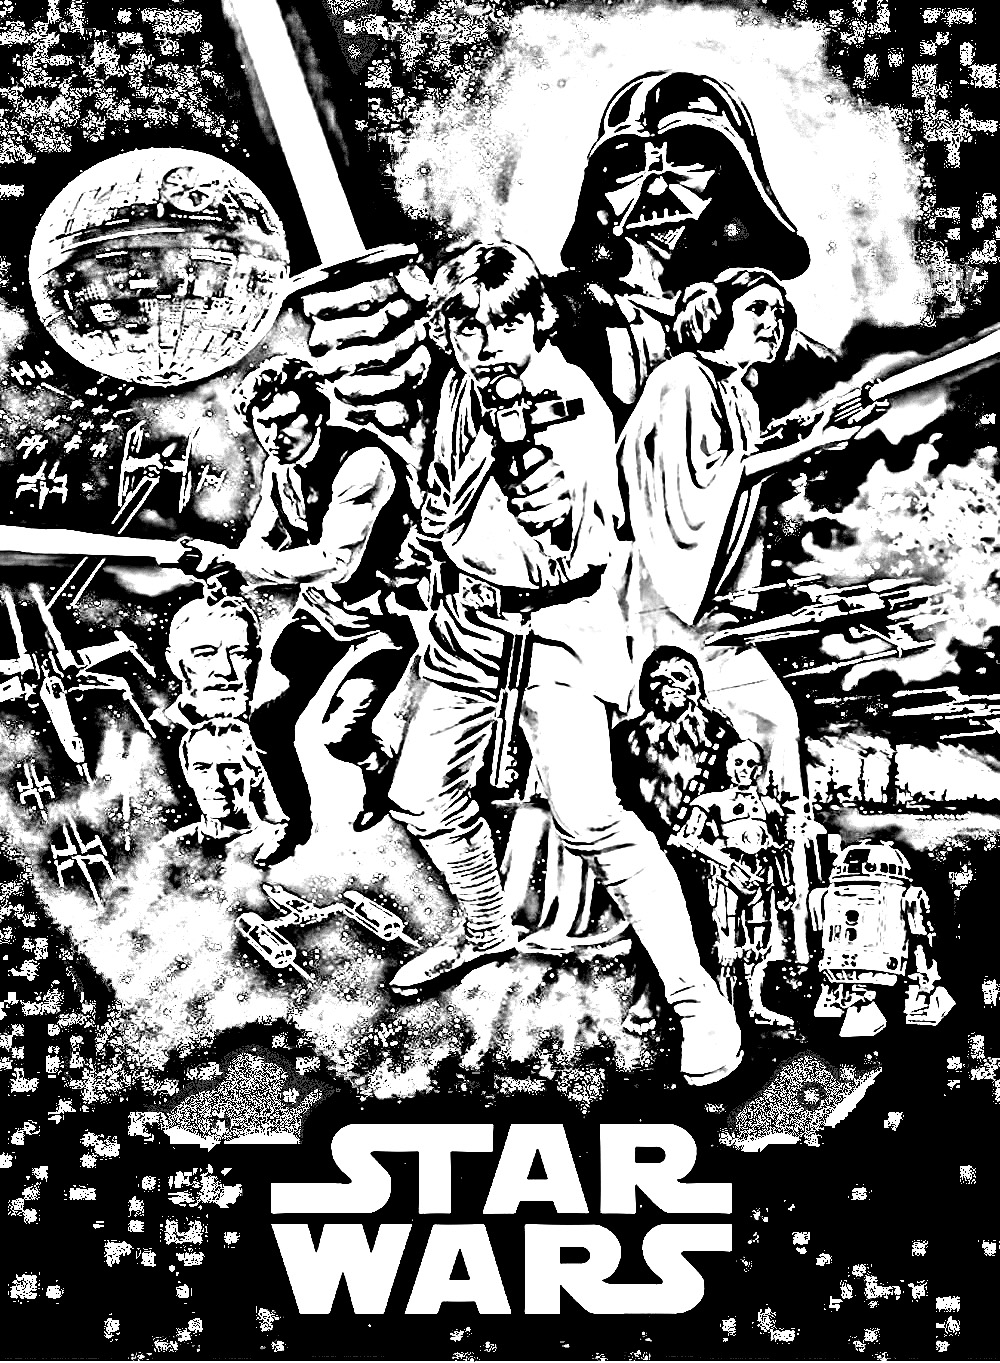 Eine Malvorlage mit dem Star Wars Episode IV Filmposter. Star Wars: Episode IV - Eine neue Hoffnung (Star Wars) ist ein Film unter der Regie von George Lucas mit Mark Hamill und Harrison Ford in den Hauptrollen. Er wurde 1977 in die Kinos gebracht.